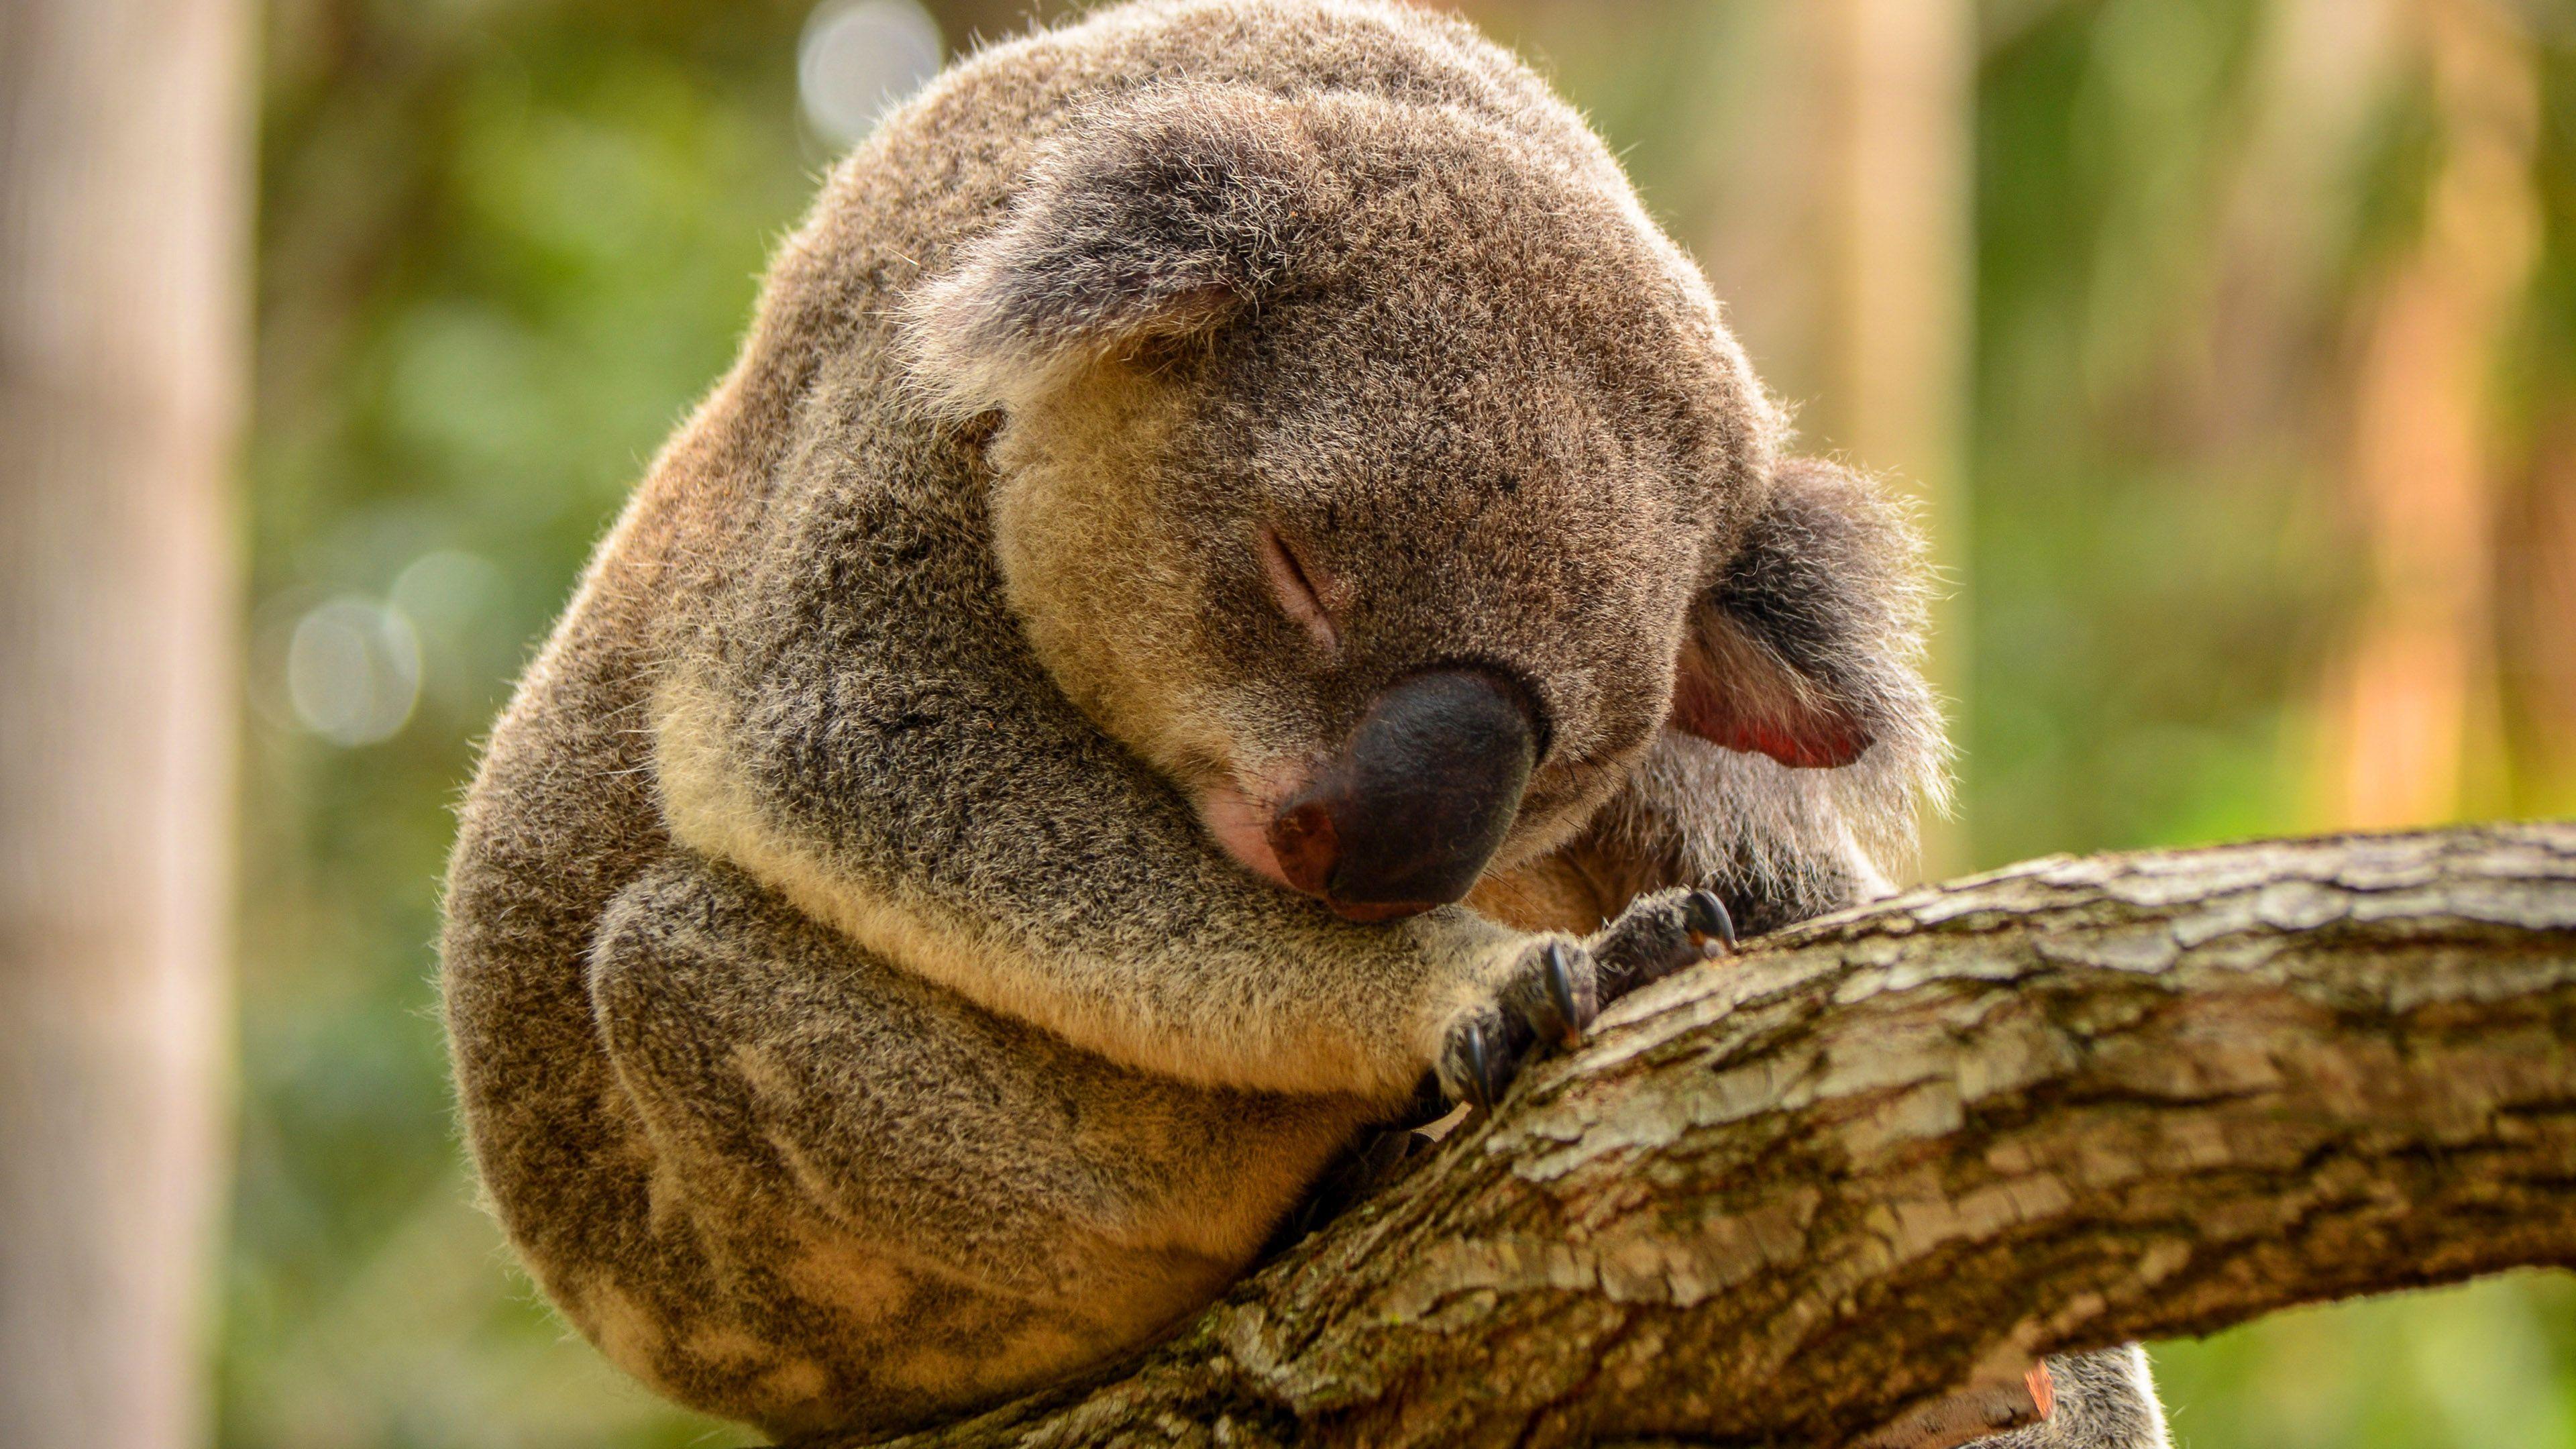 Hd Sleeping Koala Wallpaper - Hd Wallpaper Sleeping Koala , HD Wallpaper & Backgrounds